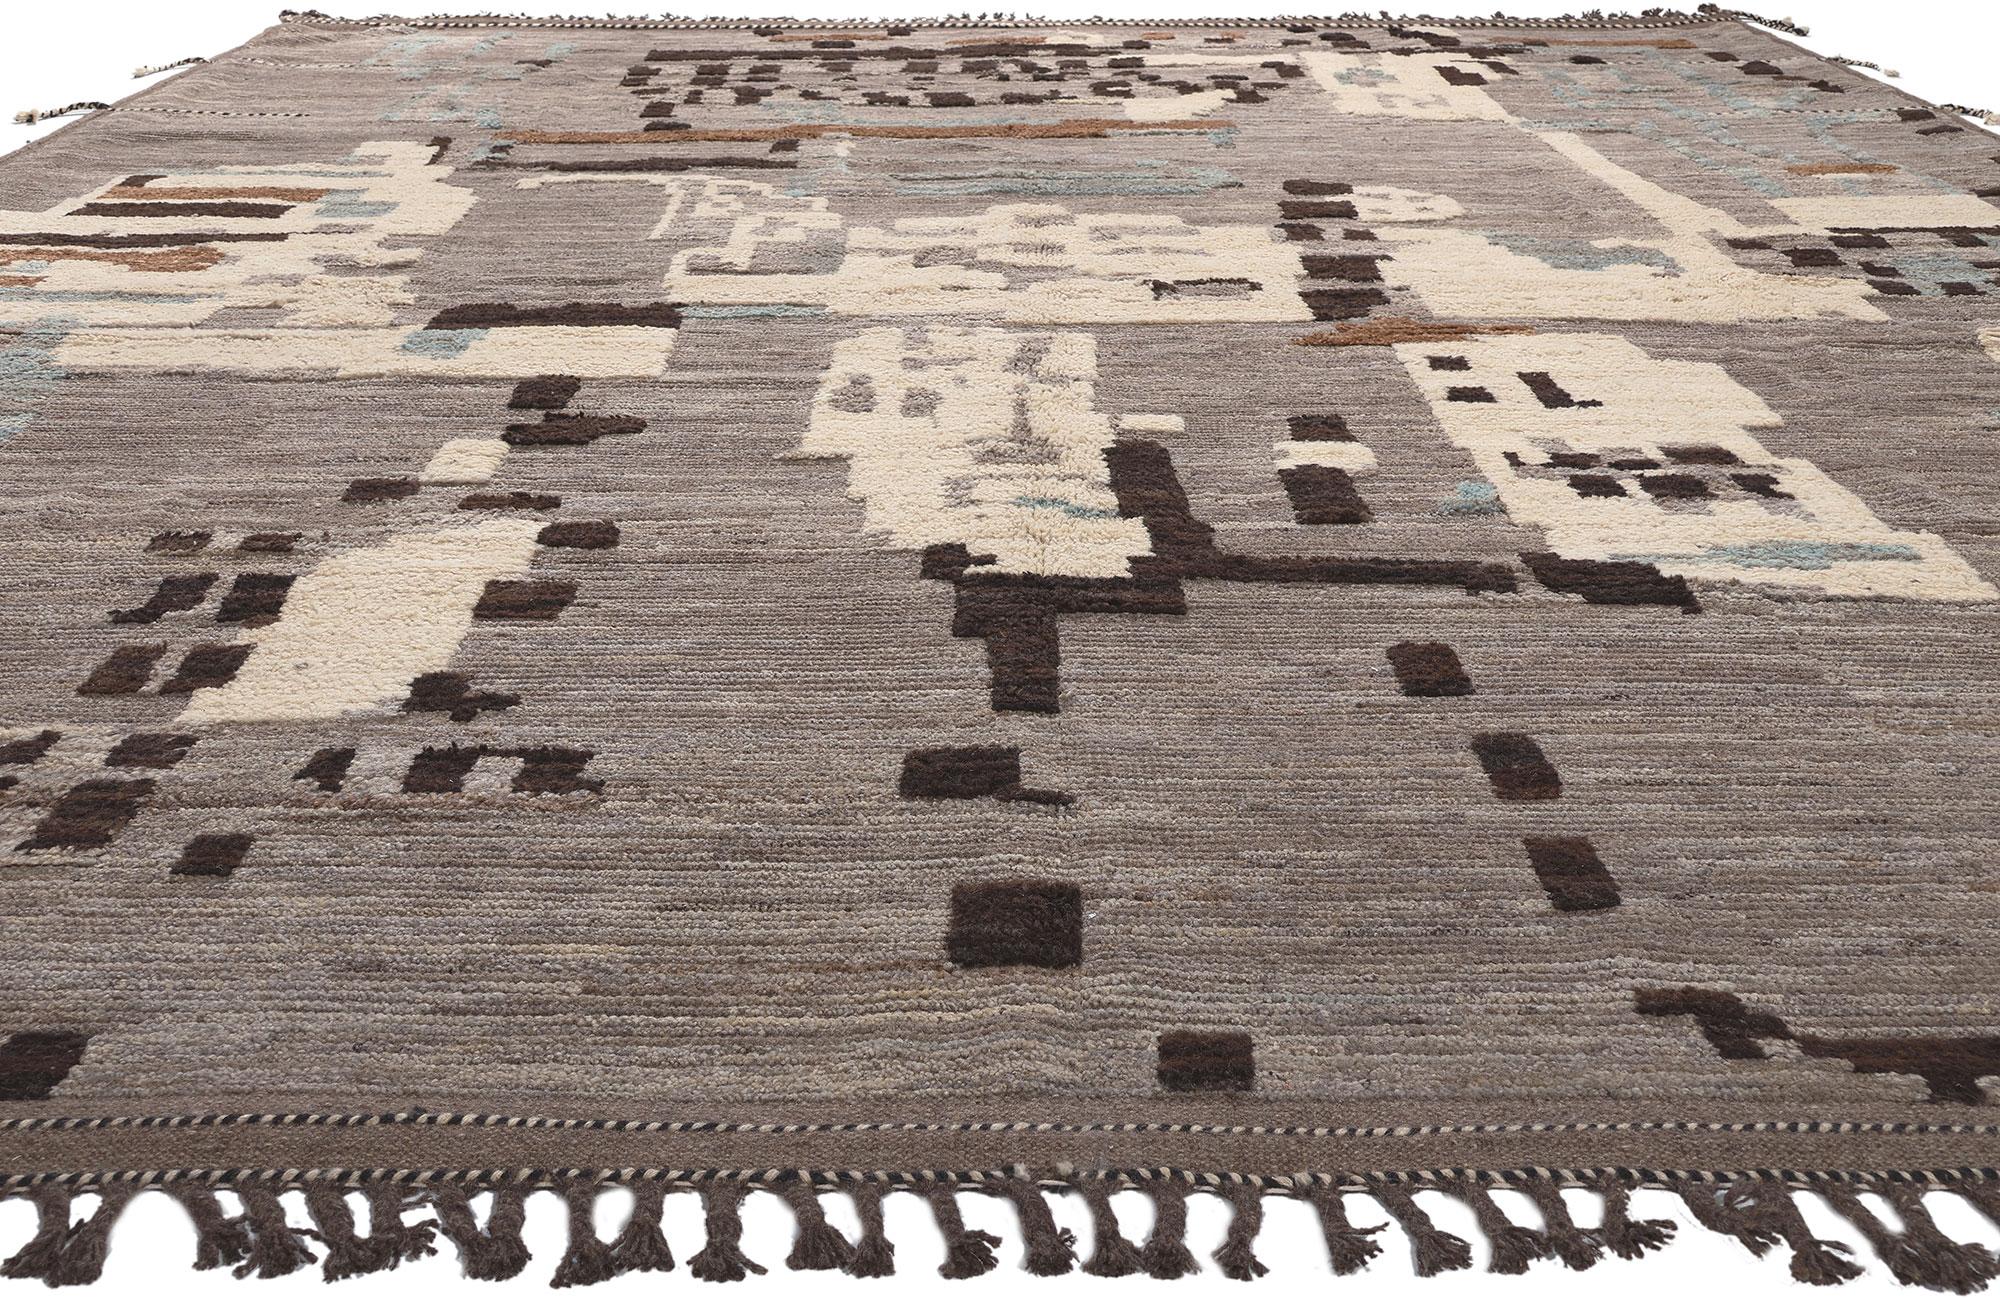 modern earth tone rugs